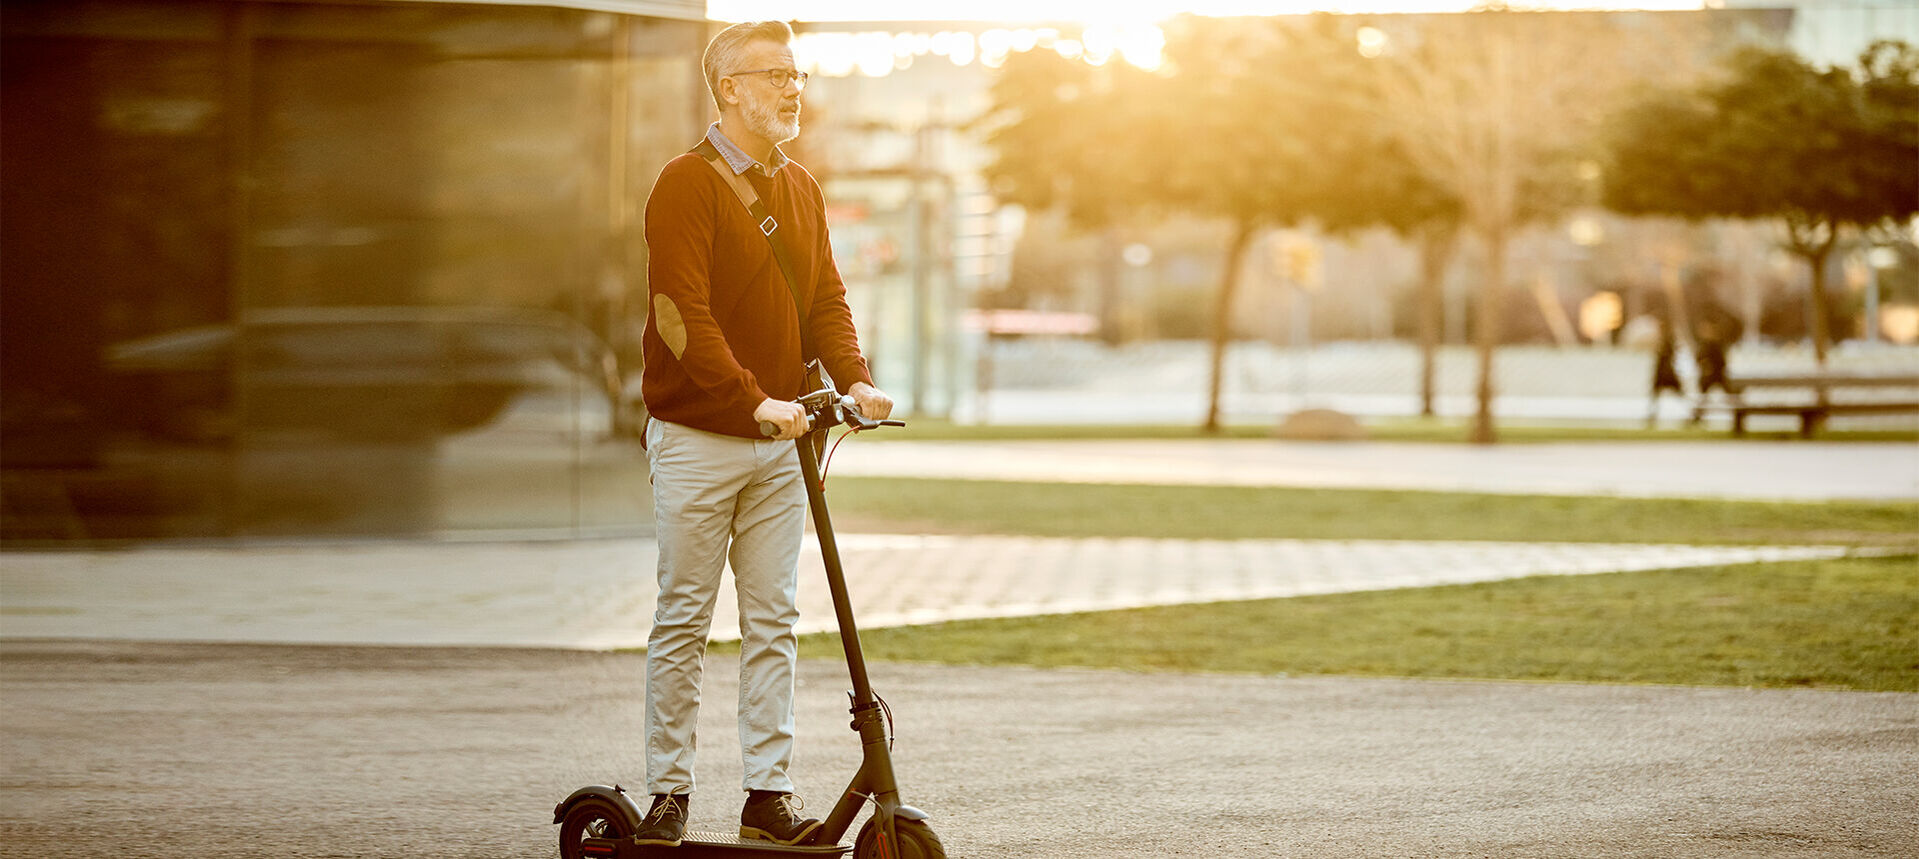 Ein Mann fährt auf einem E-Scooter durch einen Park